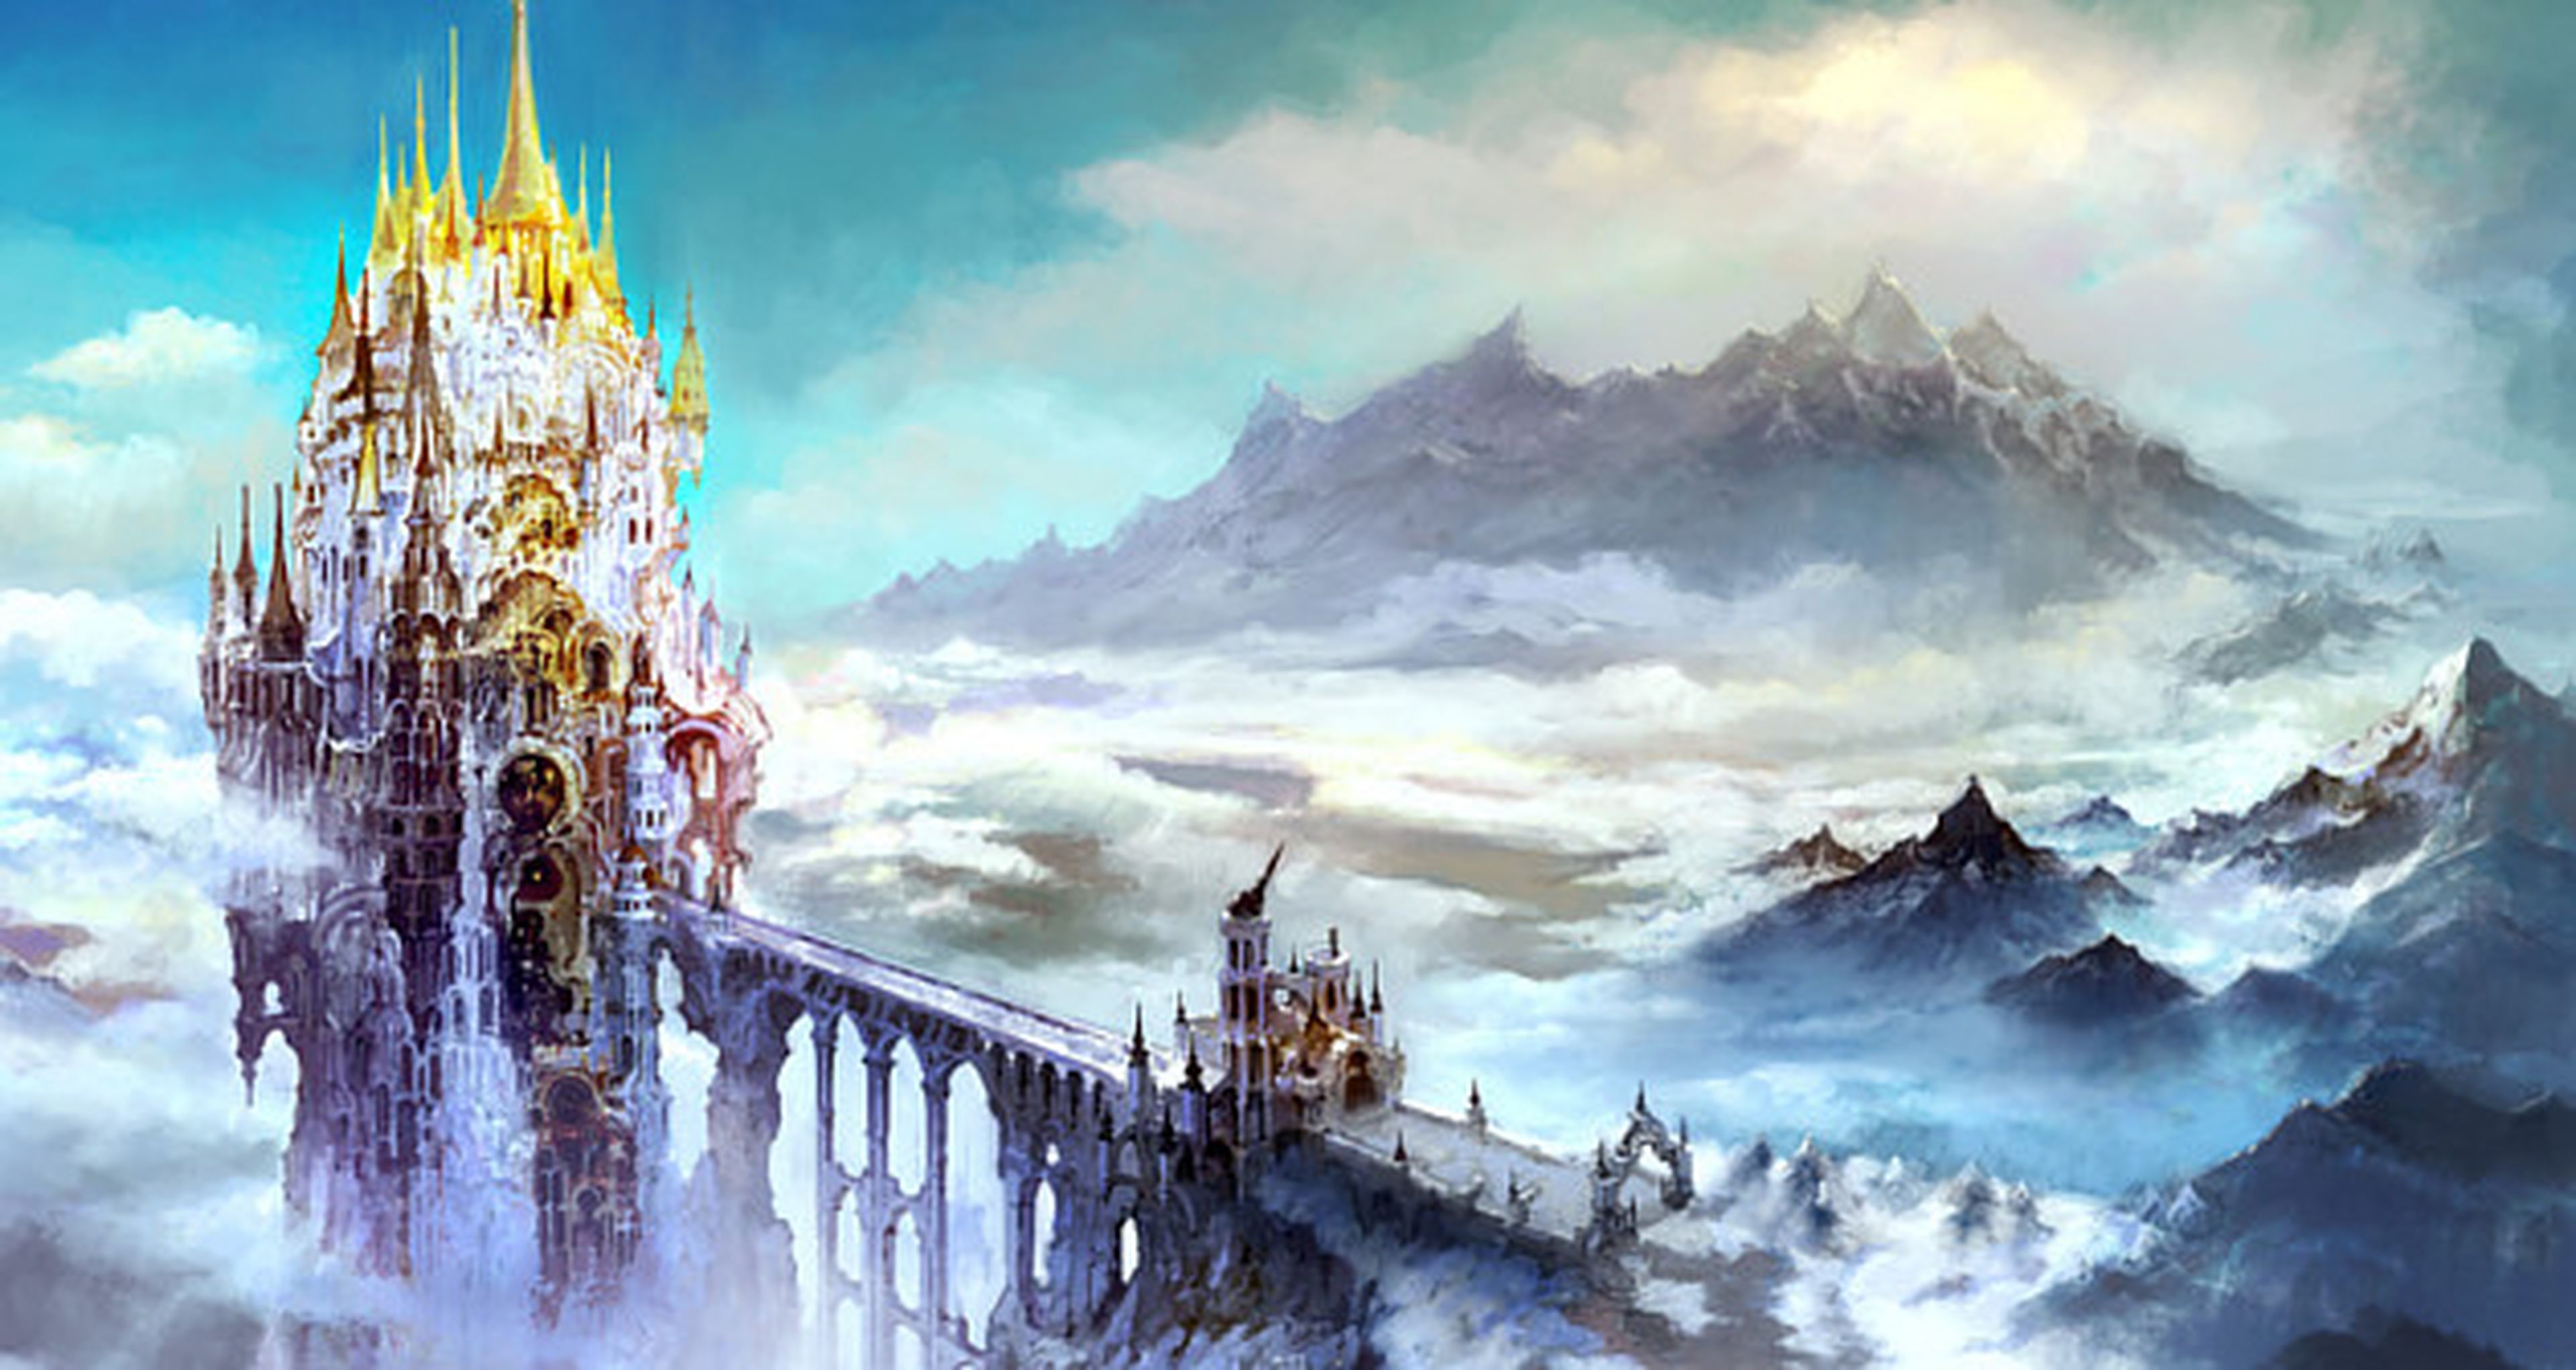 Diseños e ilustraciones de Heavensward, la expansión de Final Fantasy XIV